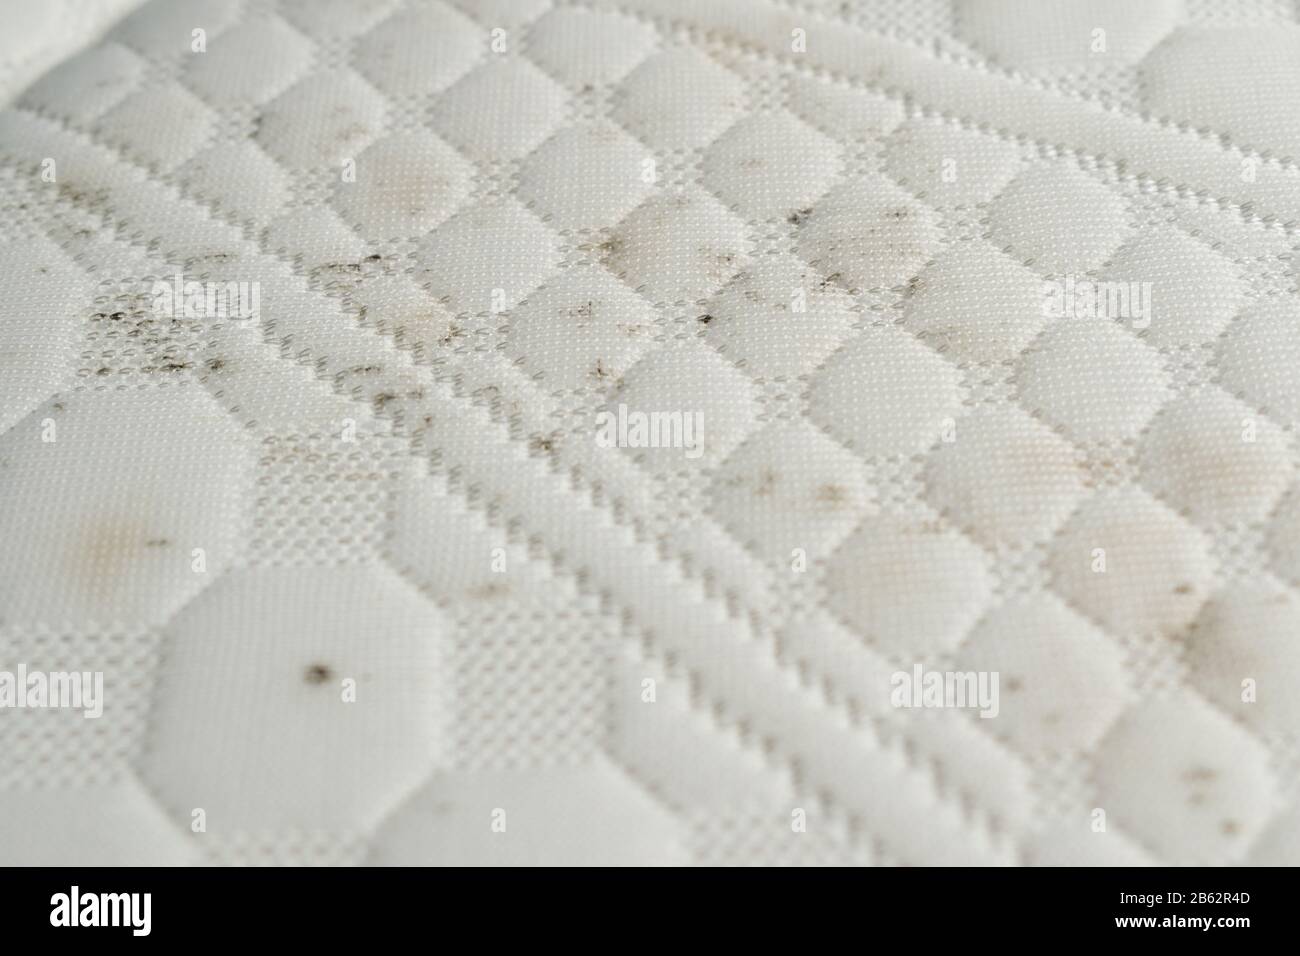 Schimmel und Schmutz auf einem Bett. Matratze mit Flecken von  Schimmelsporen Stockfotografie - Alamy